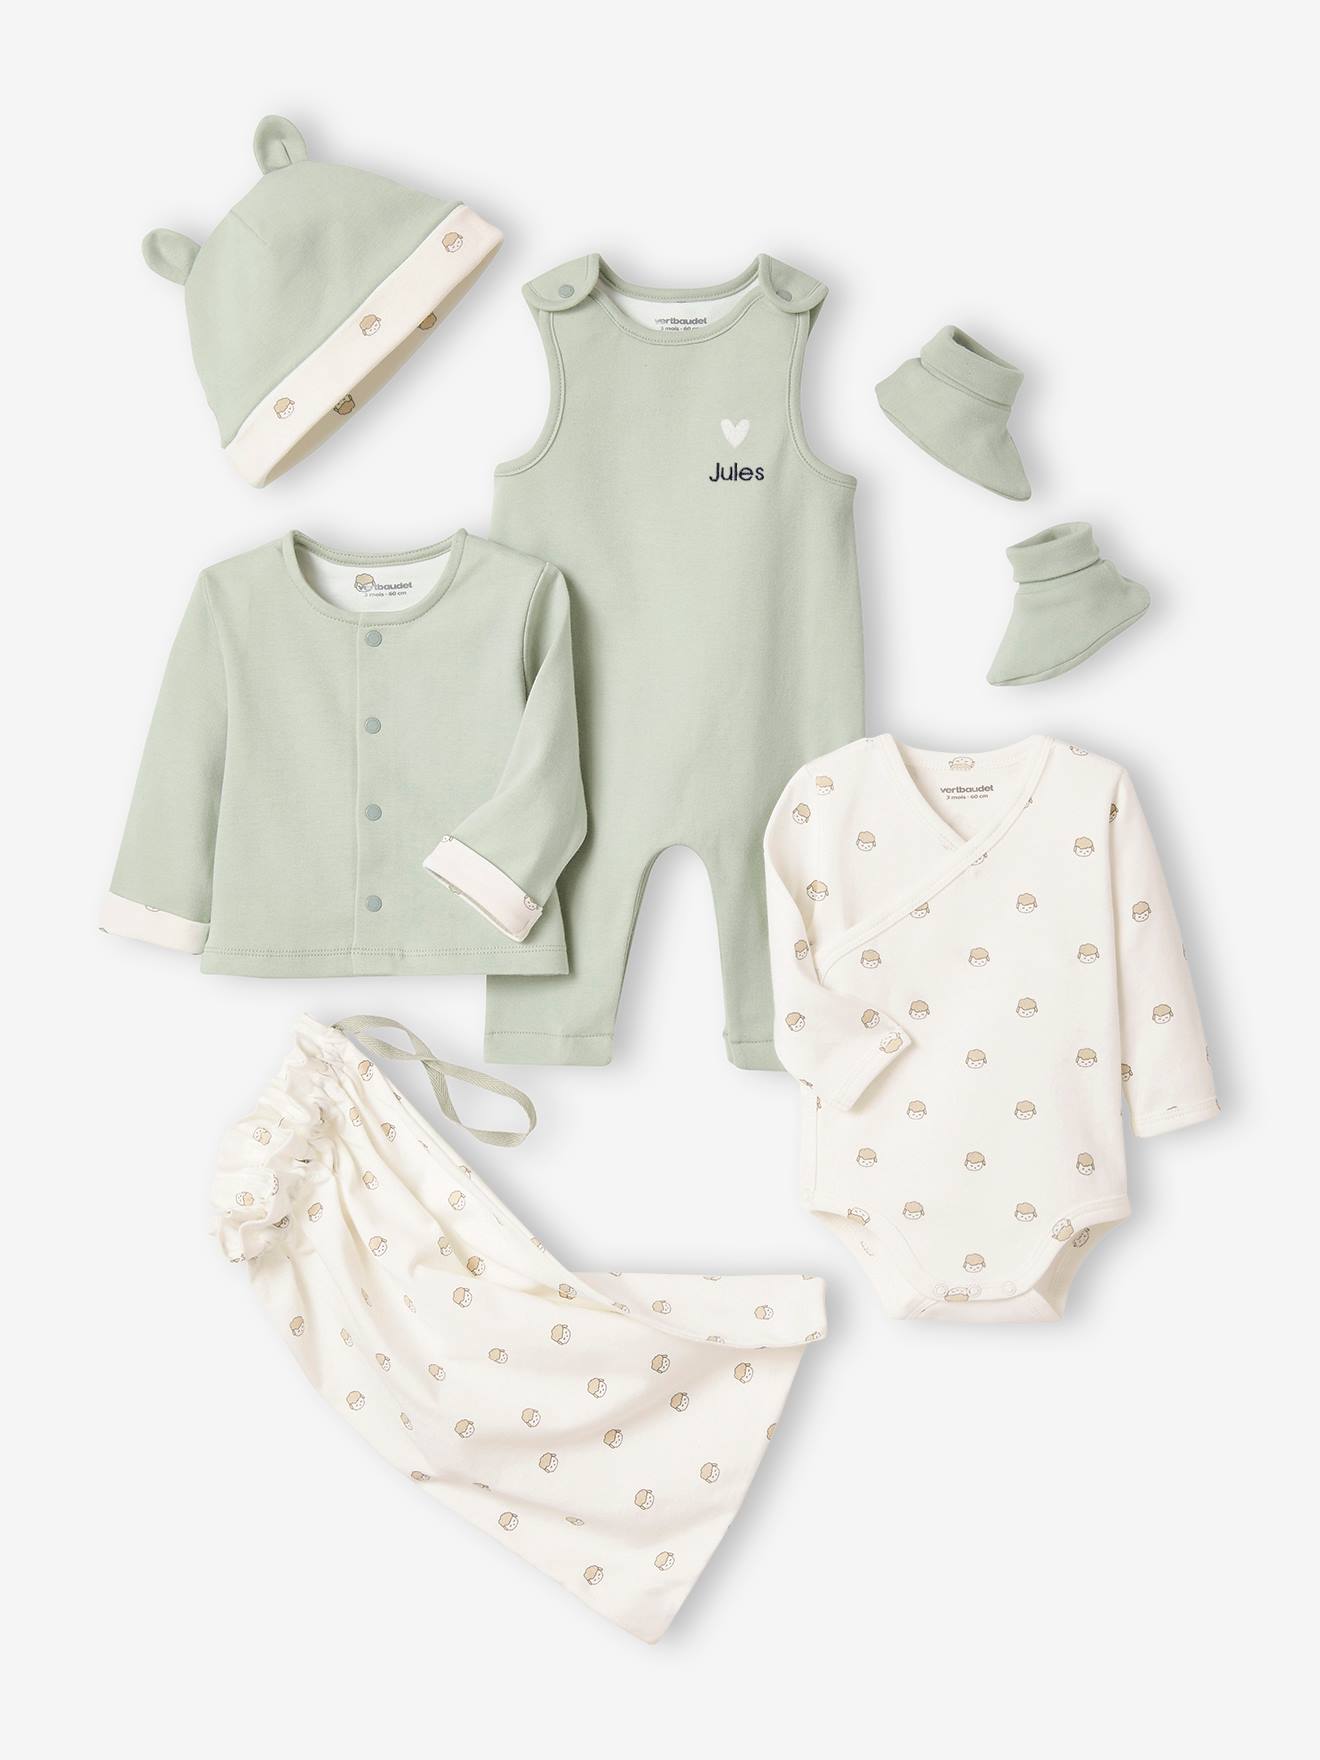 Kit para recién nacido con 6 prendas personalizables + bolsa de